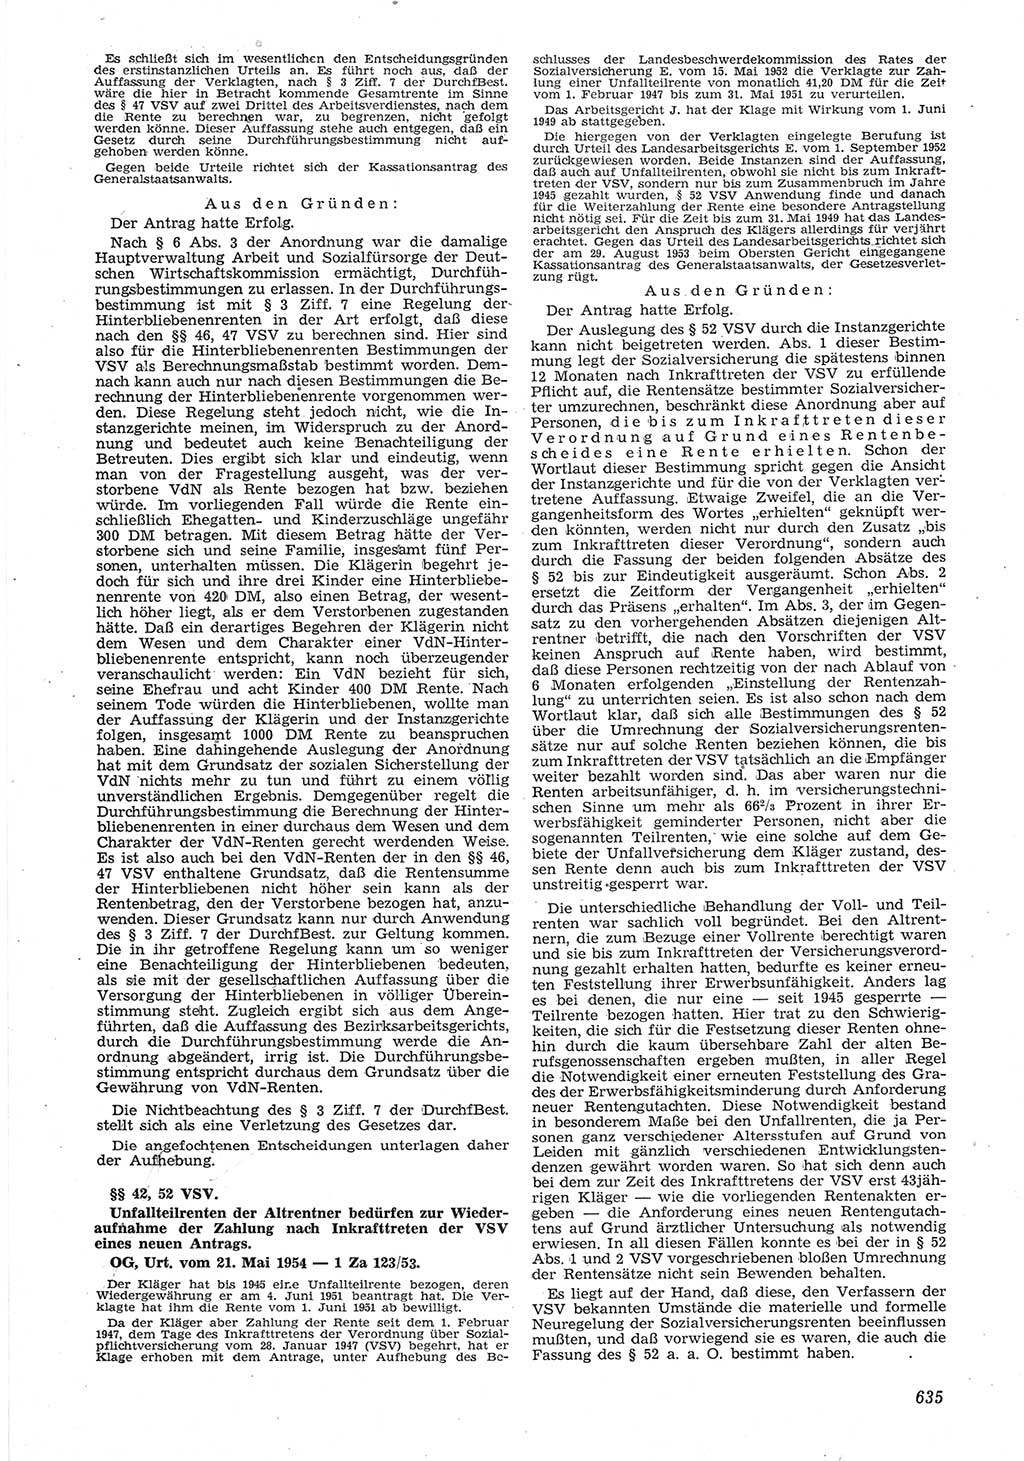 Neue Justiz (NJ), Zeitschrift für Recht und Rechtswissenschaft [Deutsche Demokratische Republik (DDR)], 8. Jahrgang 1954, Seite 635 (NJ DDR 1954, S. 635)